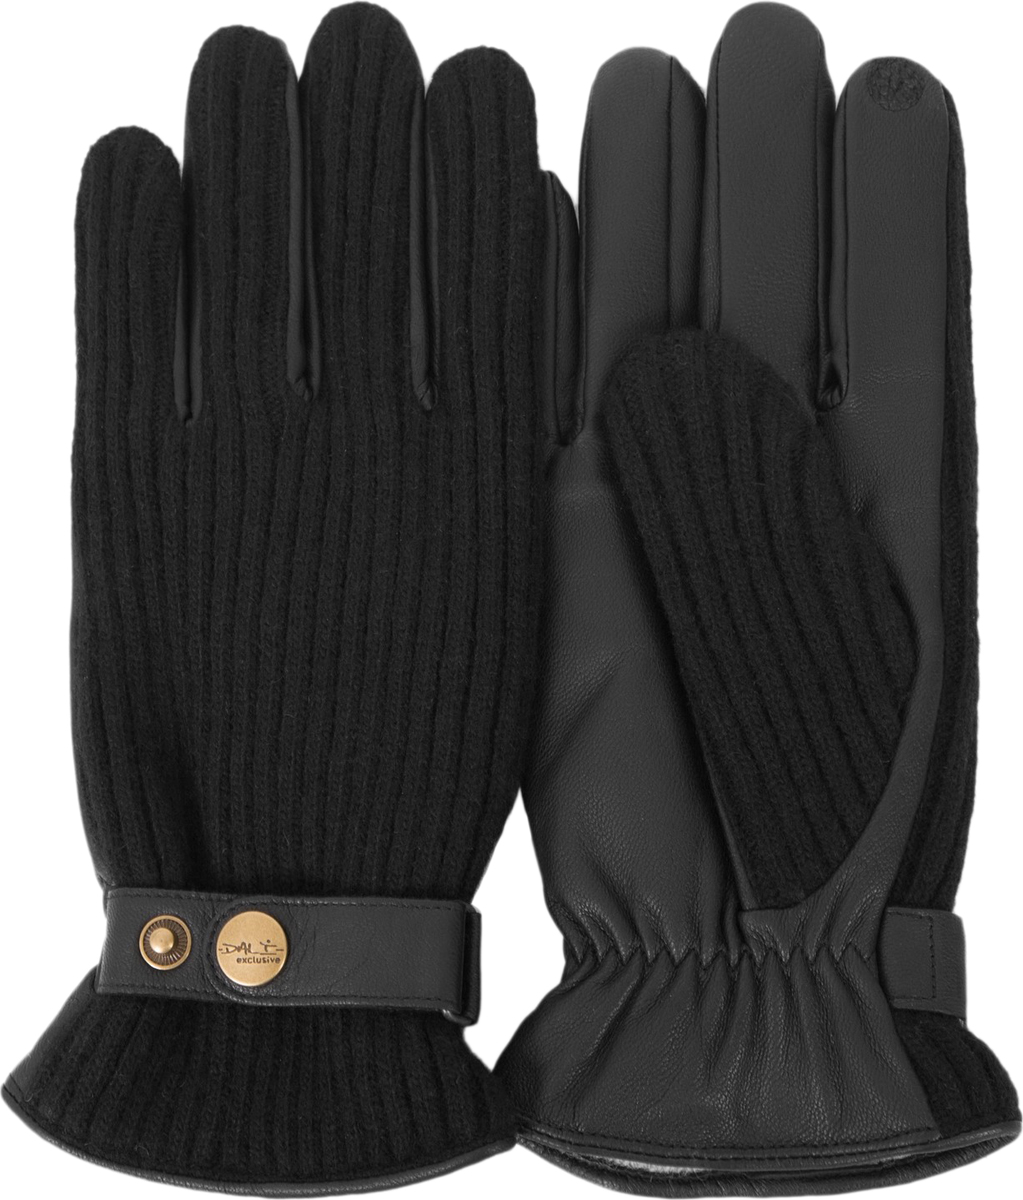 Перчатки мужские Dali Exclusive, цвет: черный. i.GT11_BOND/BL. Размер 9